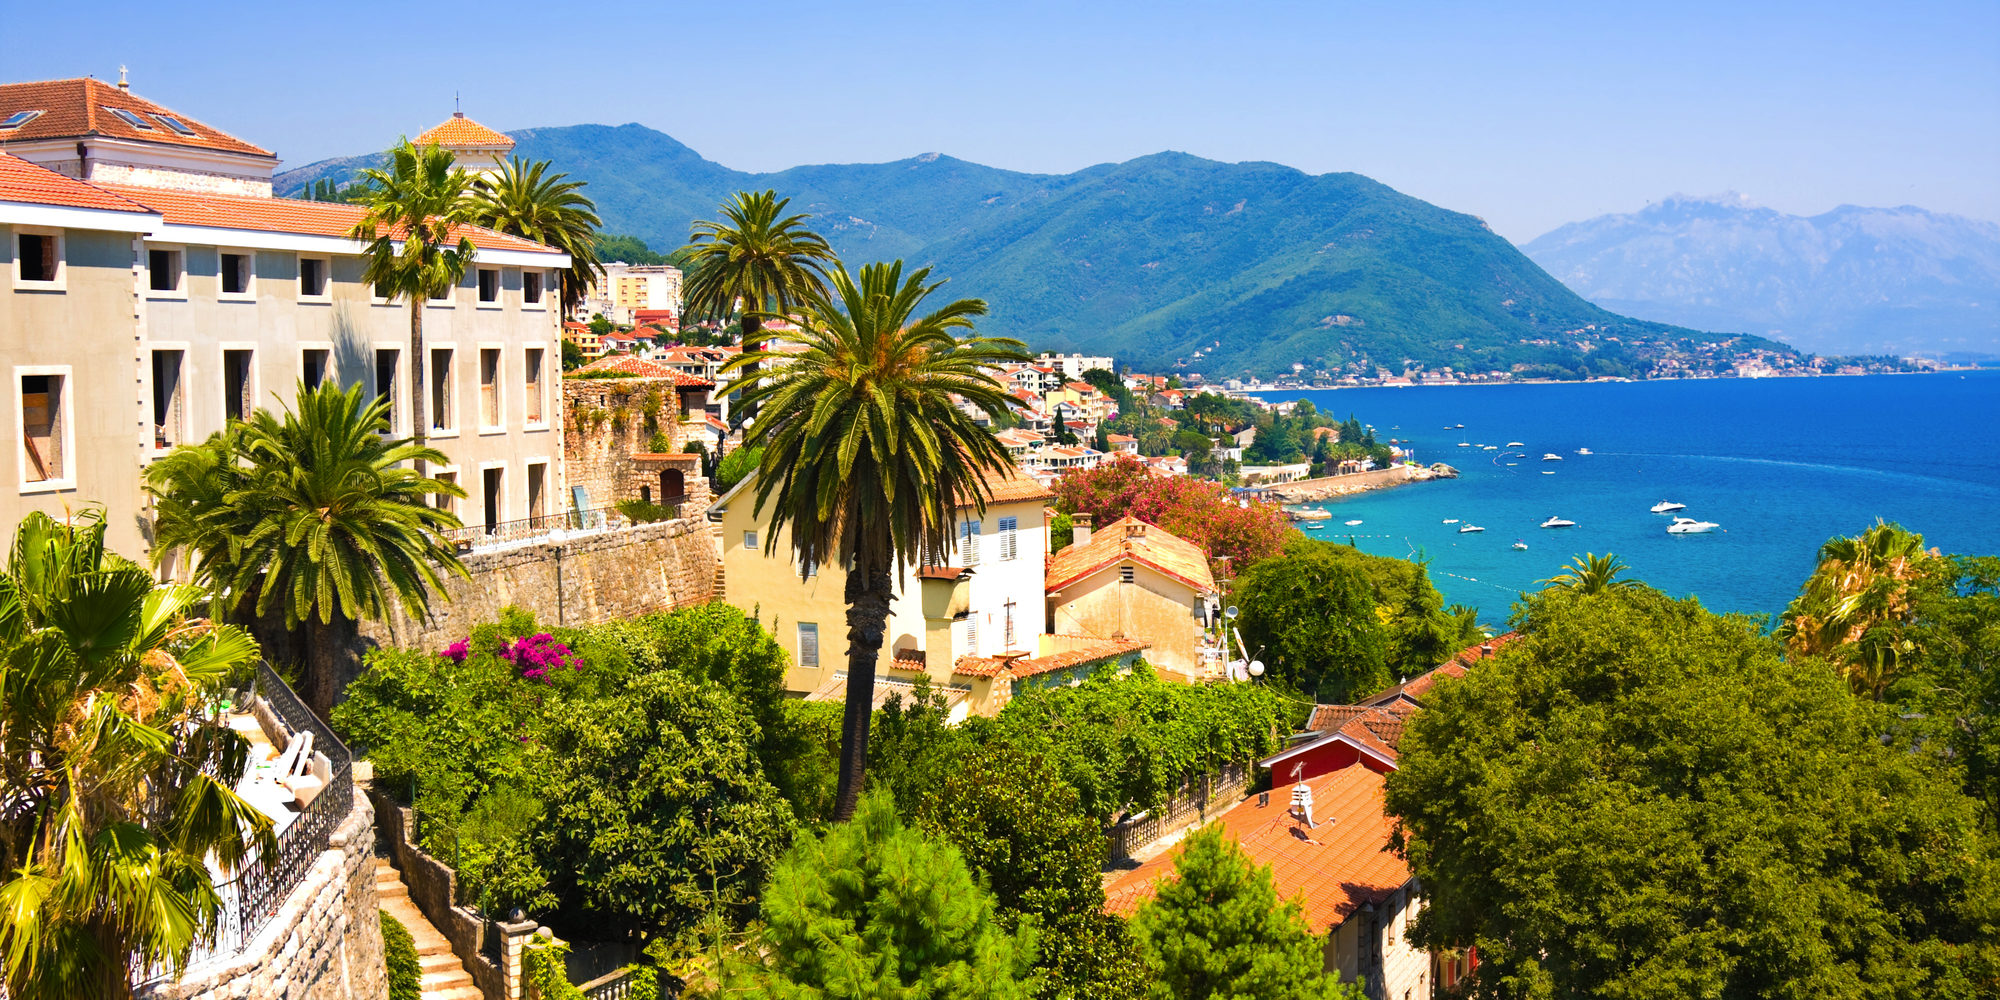 Herceg Novi, Kotor Bay, Montenegro